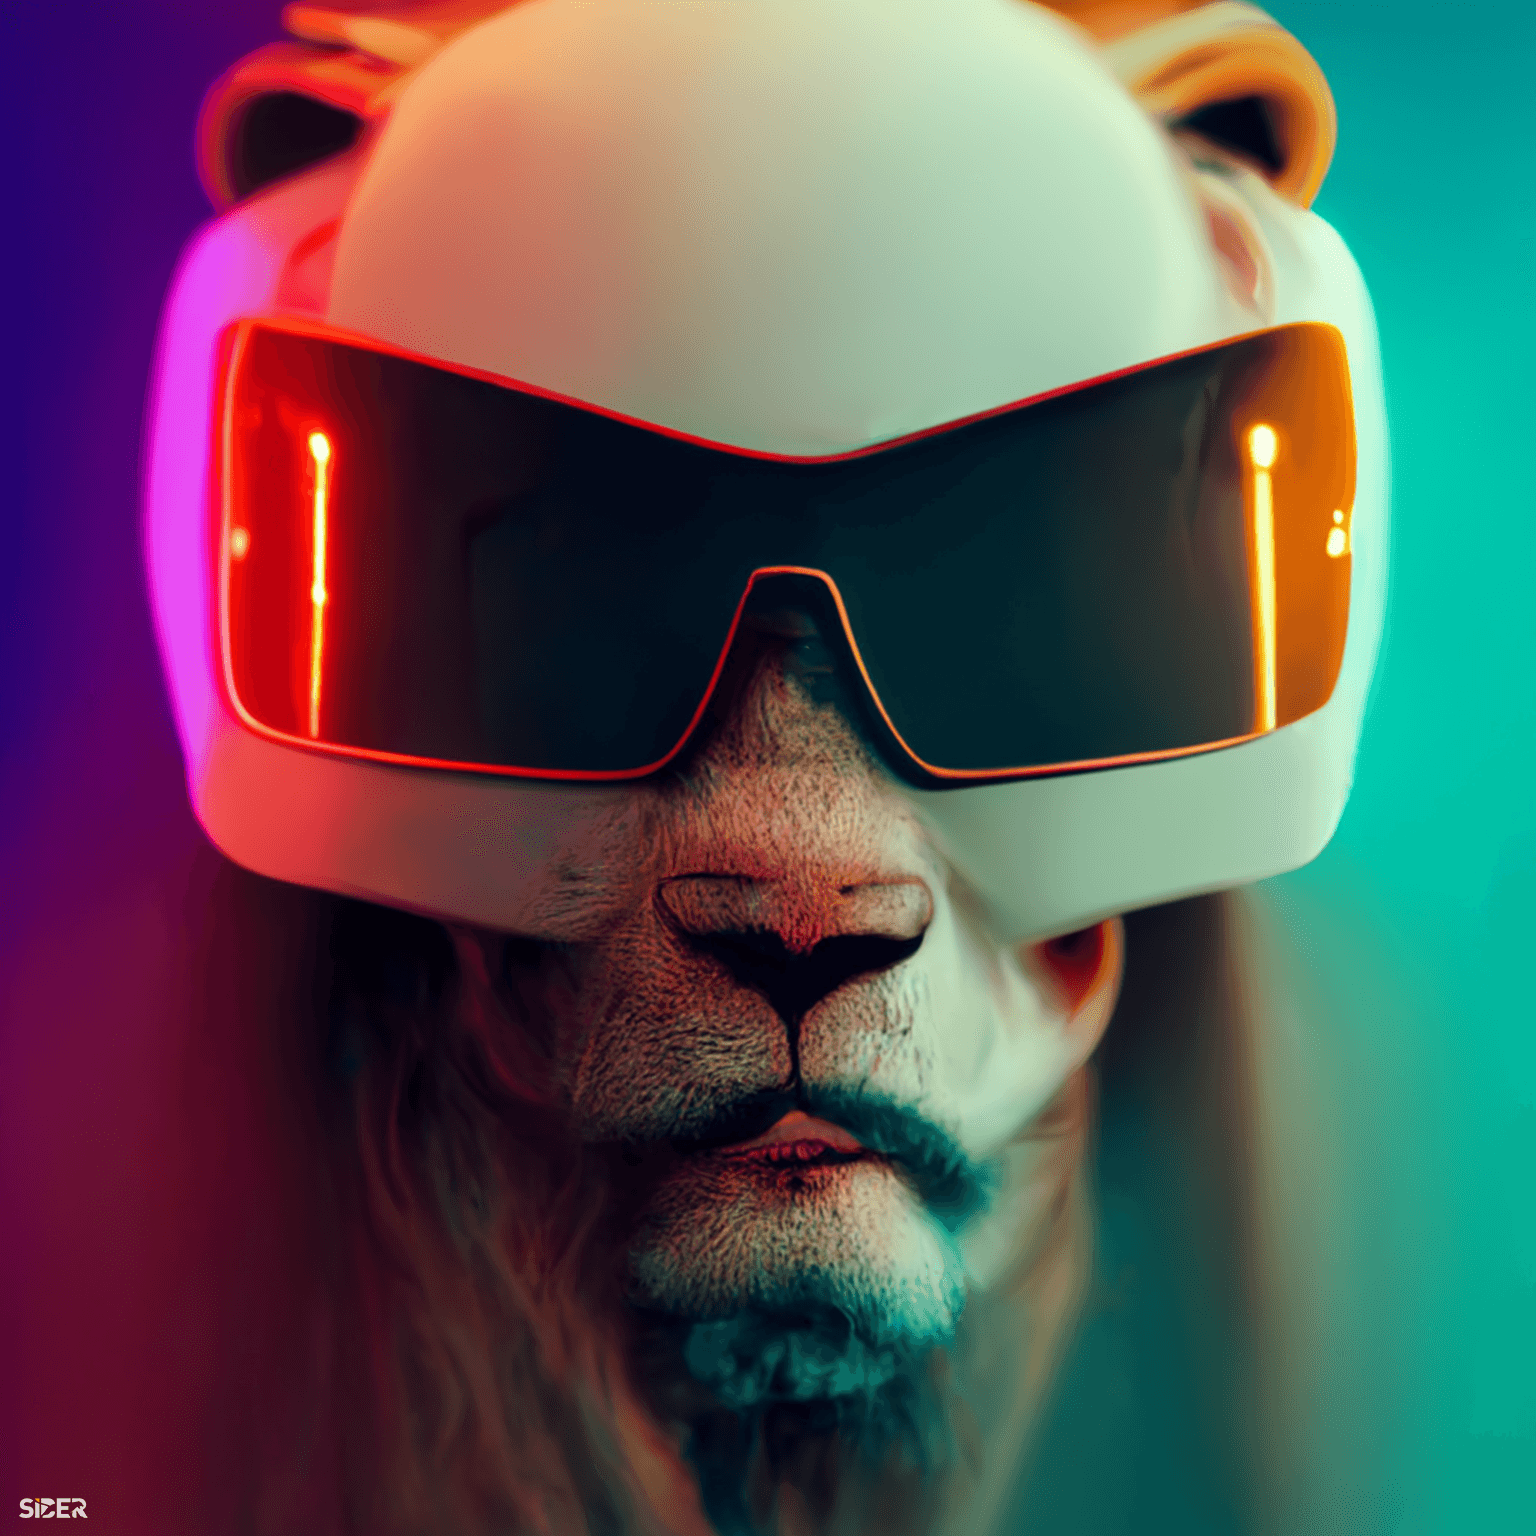 Space Lion || LF262